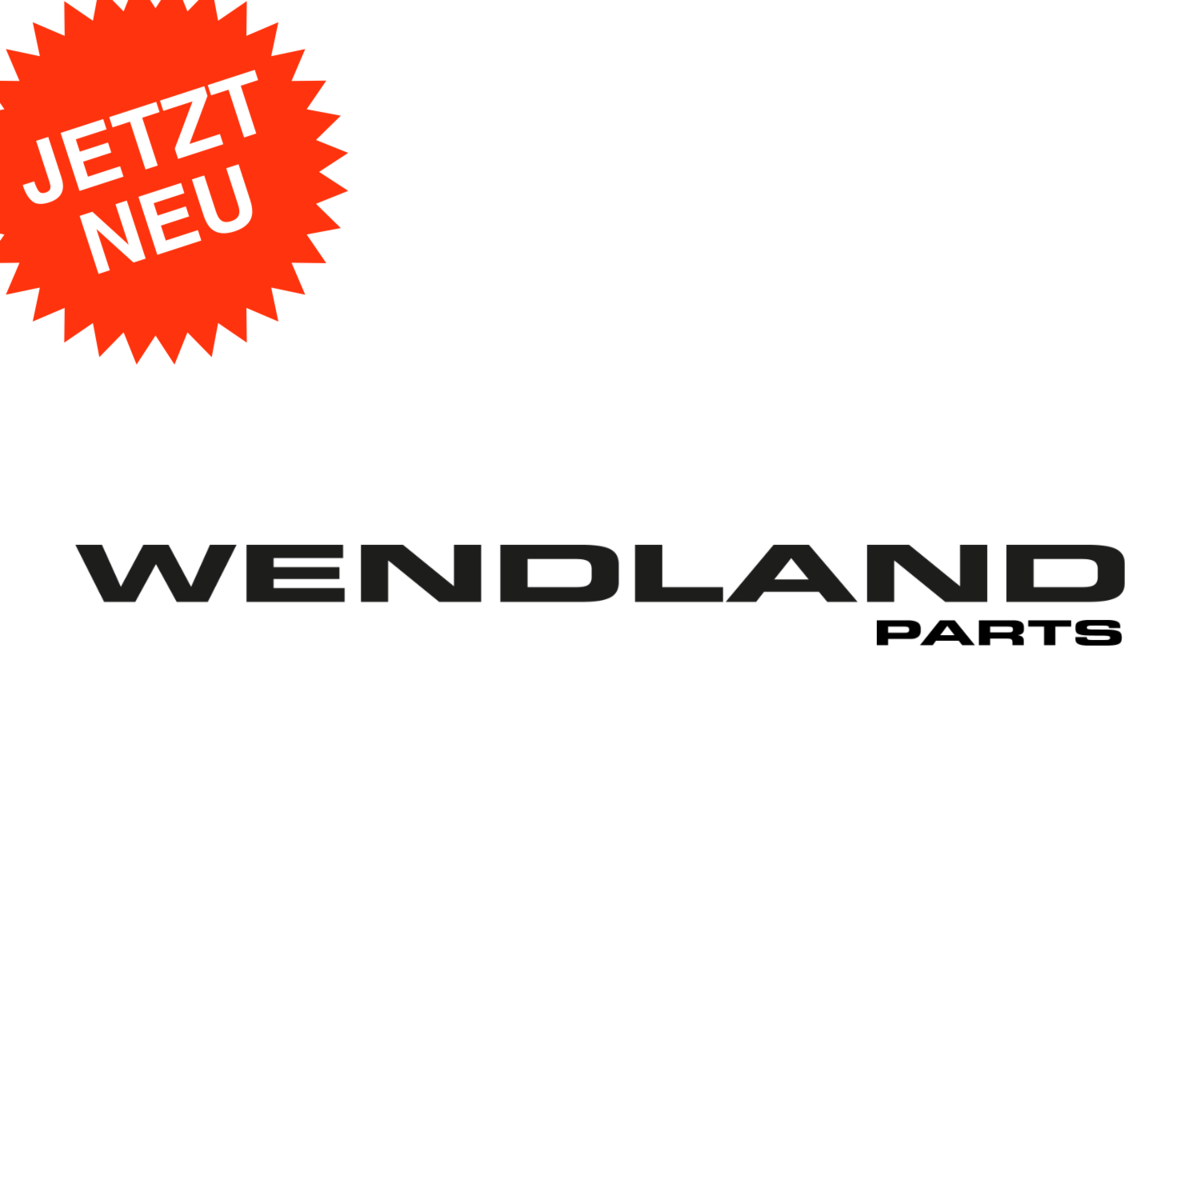 WENDLAND-Parts jetzt auf eBay